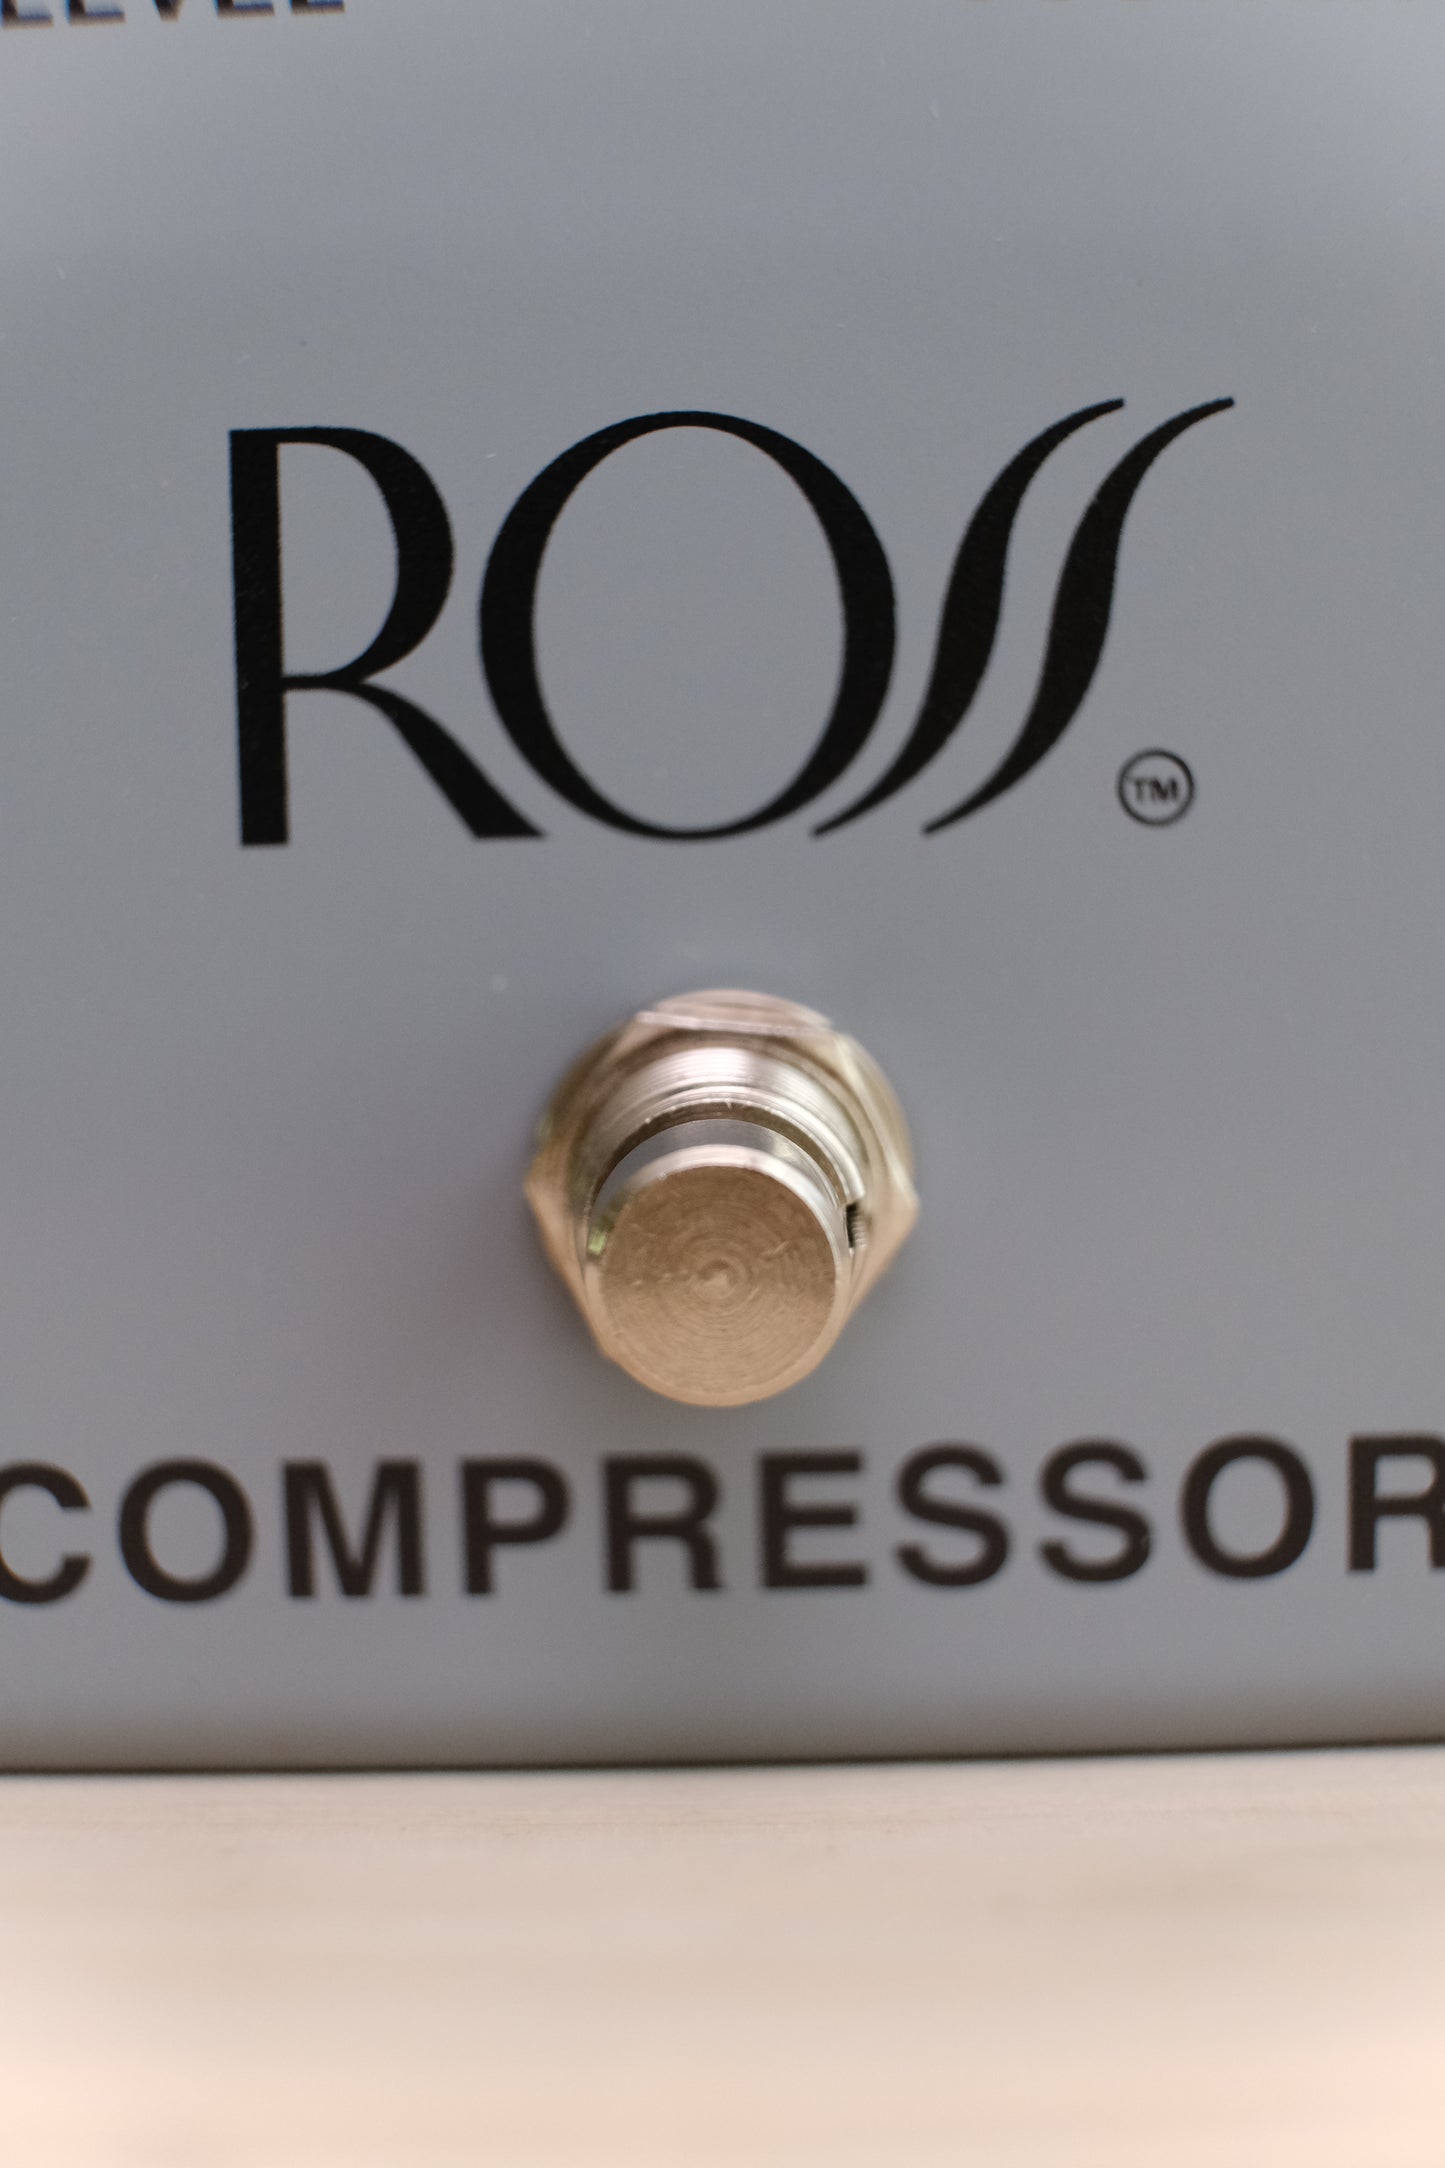 ROSS Compressor